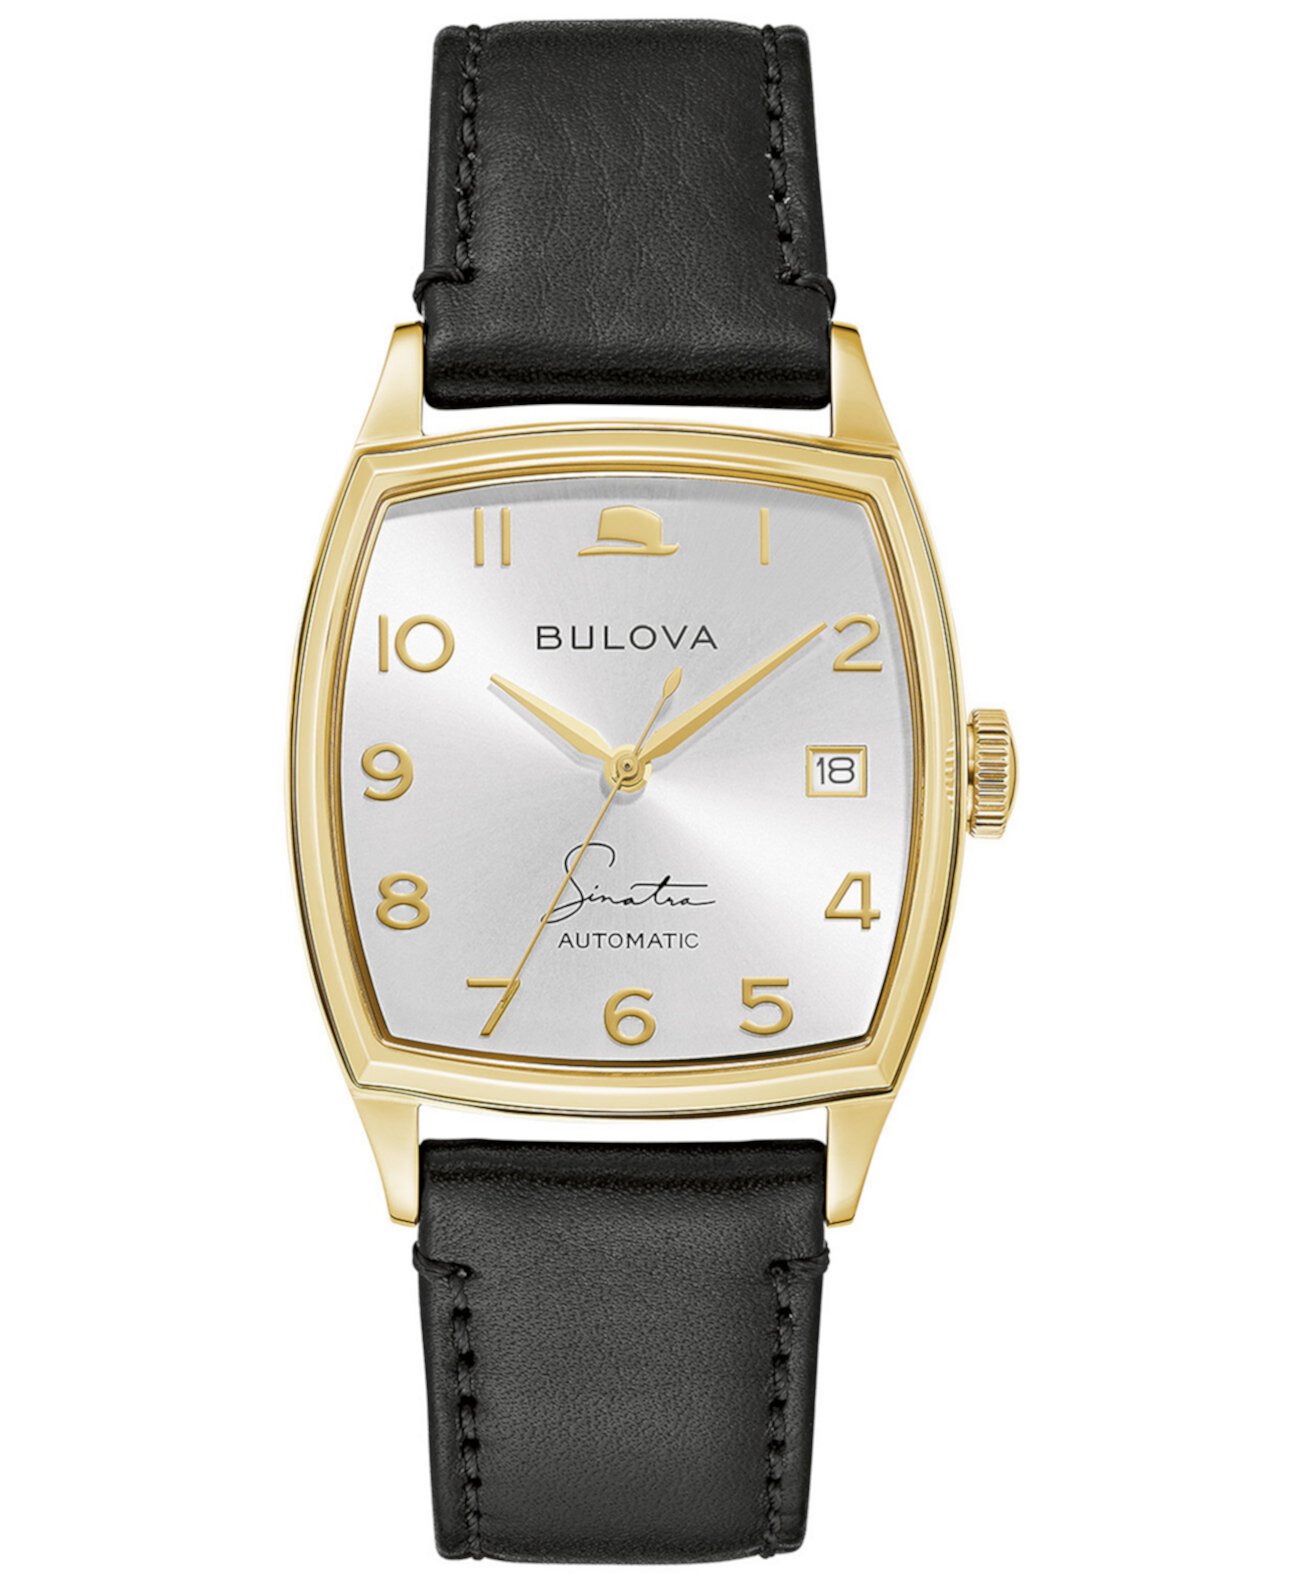 Мужские часы Frank Sinatra Automatic с черным кожаным ремешком 45x33,5 мм Bulova